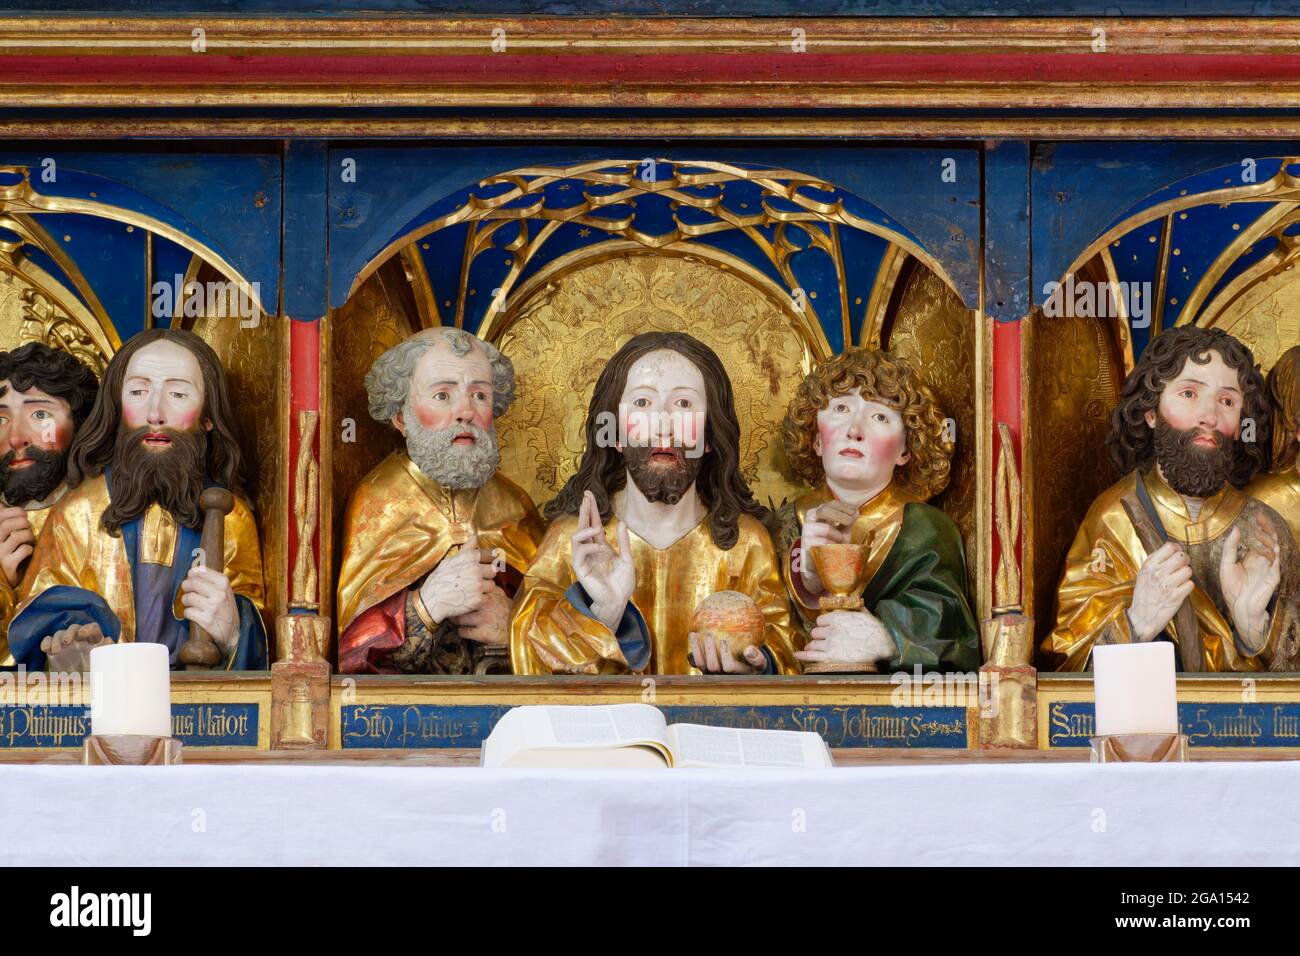 Abbaye de Blaubeuren : autel (1494) dans l'église abbatiale, predella avec des bustes de Christ und apôtres, Christ comme Salvator Mundi, Bade-Wurtemberg, Allemagne Banque D'Images